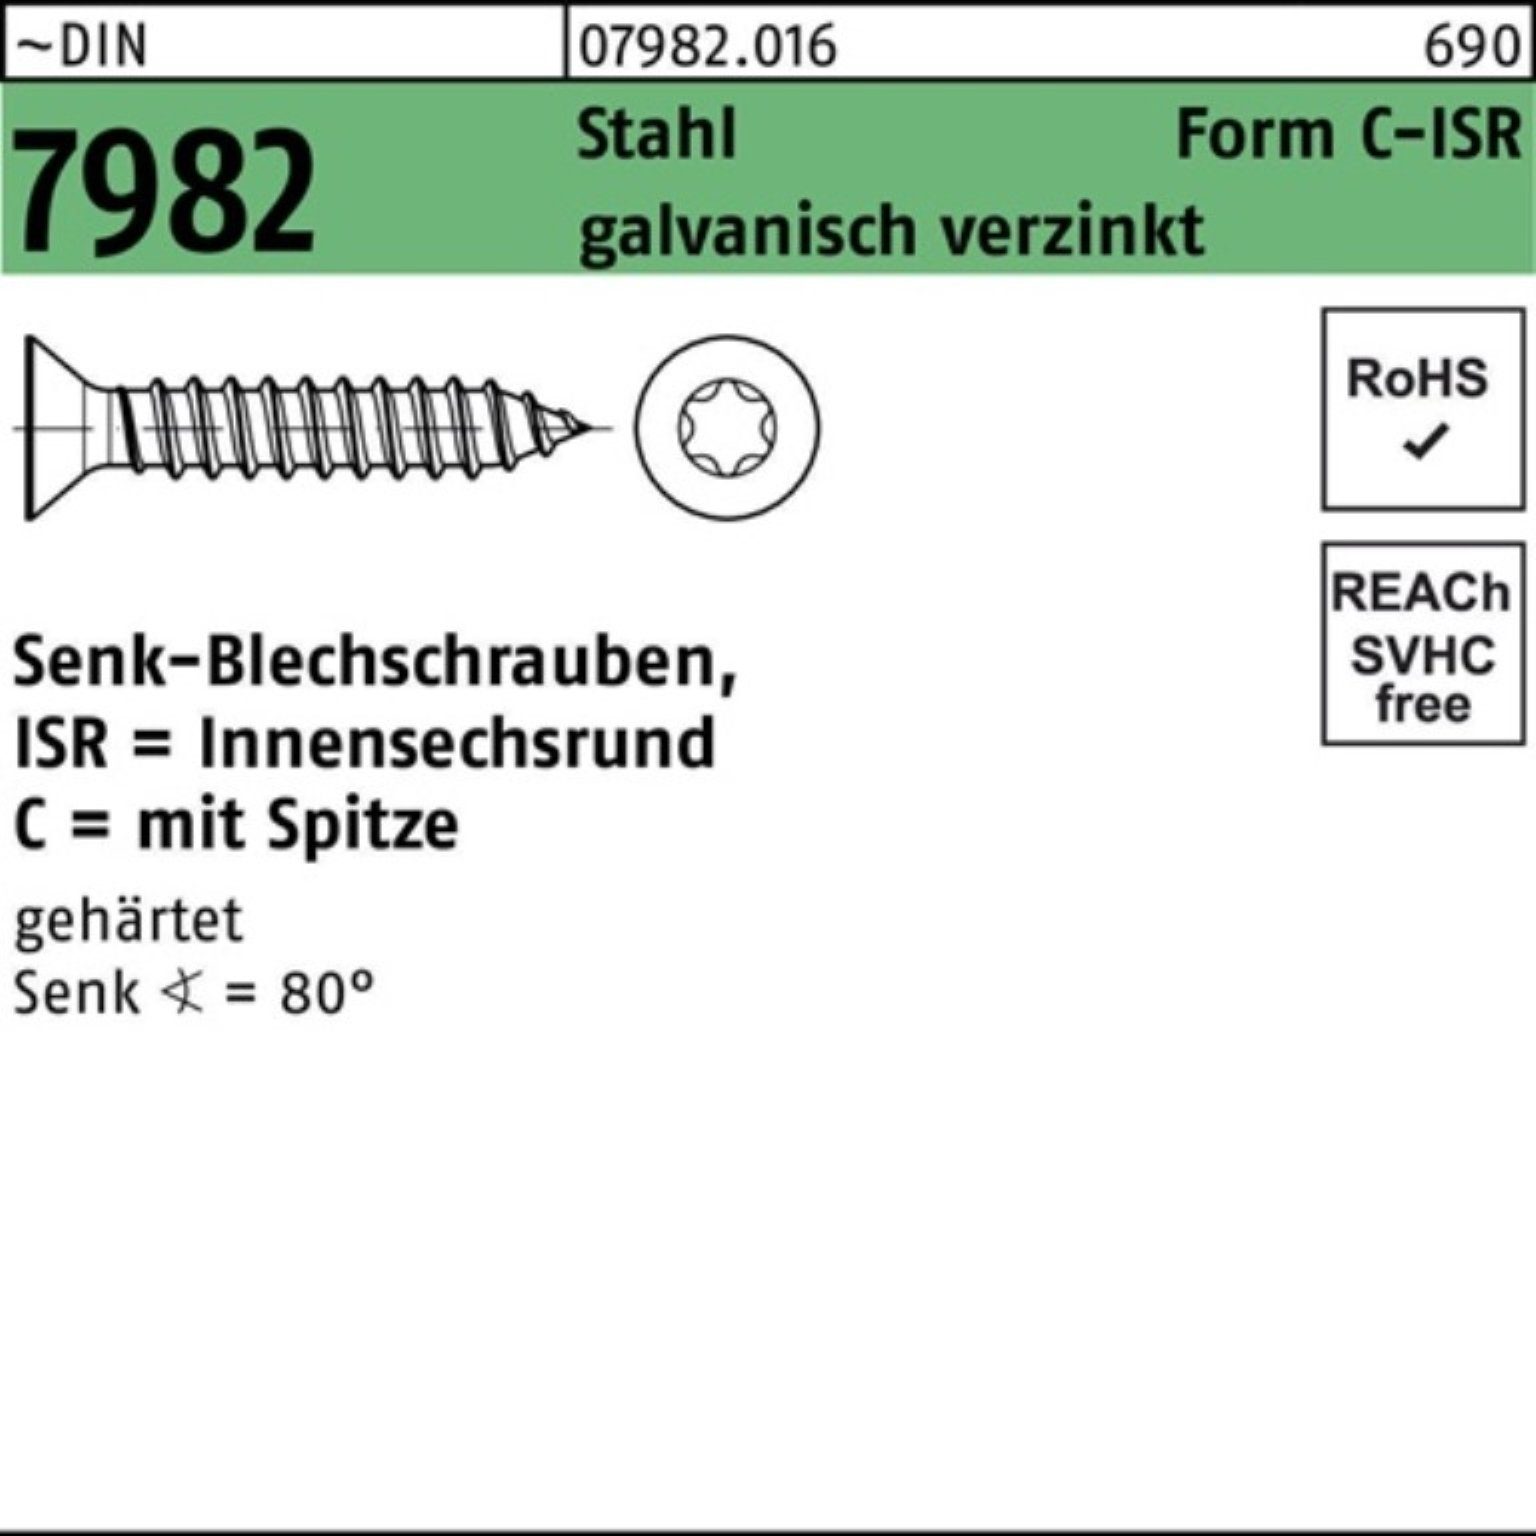 -C-T25 Schraube 7982 Senkblechschraube ISR/Spitze Reyher 4,8x70 g Pack Stahl 250er DIN